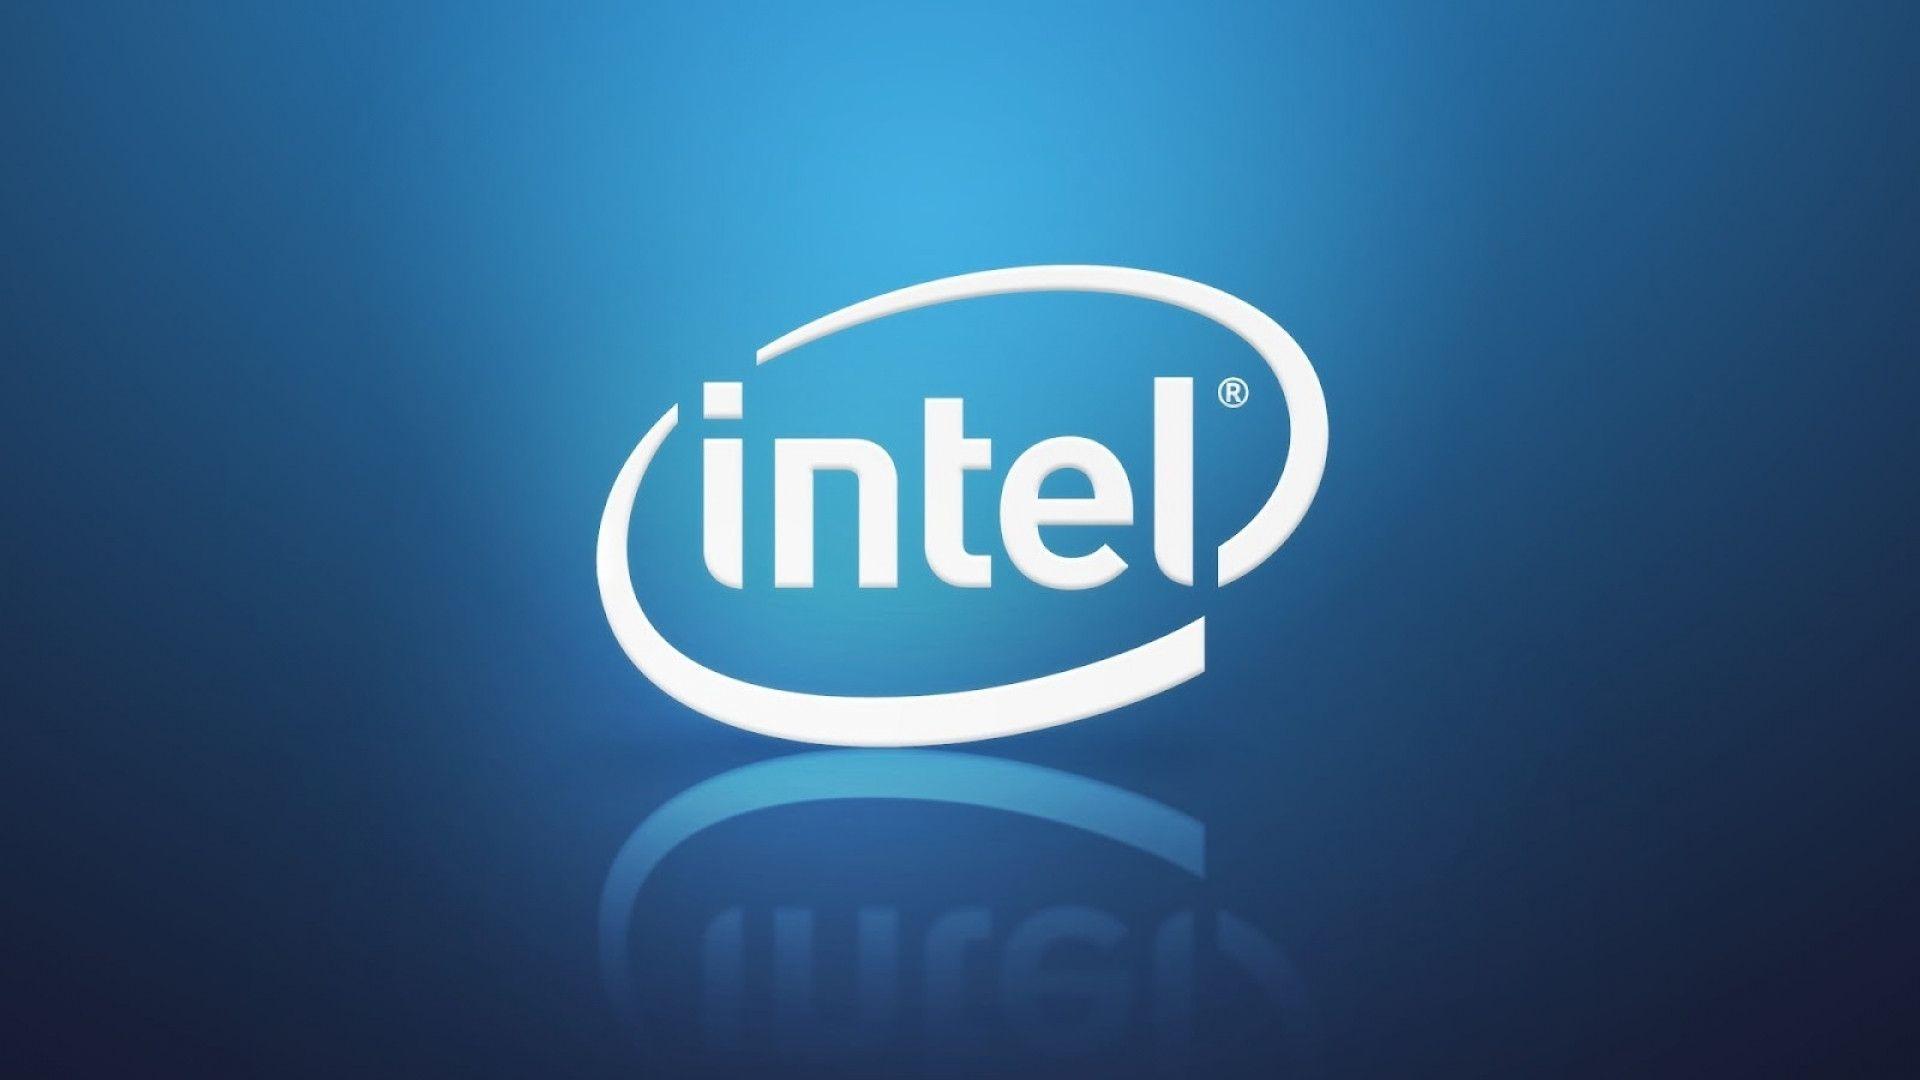 Intel Logos HD Wallpaper Wallpaper. Naviwall